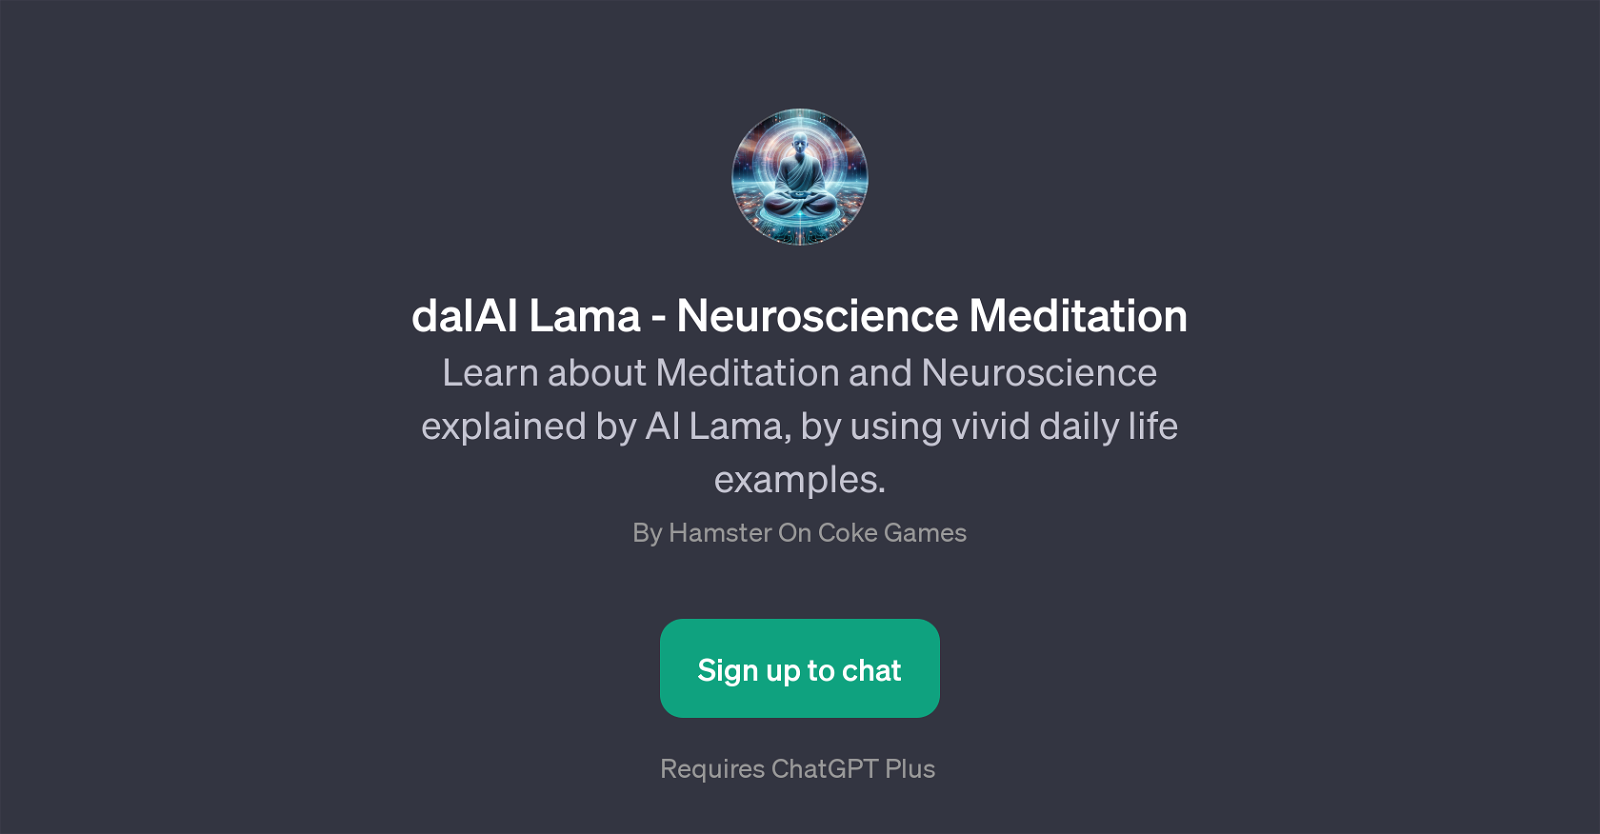 dalAI Lama - Neuroscience Meditation website